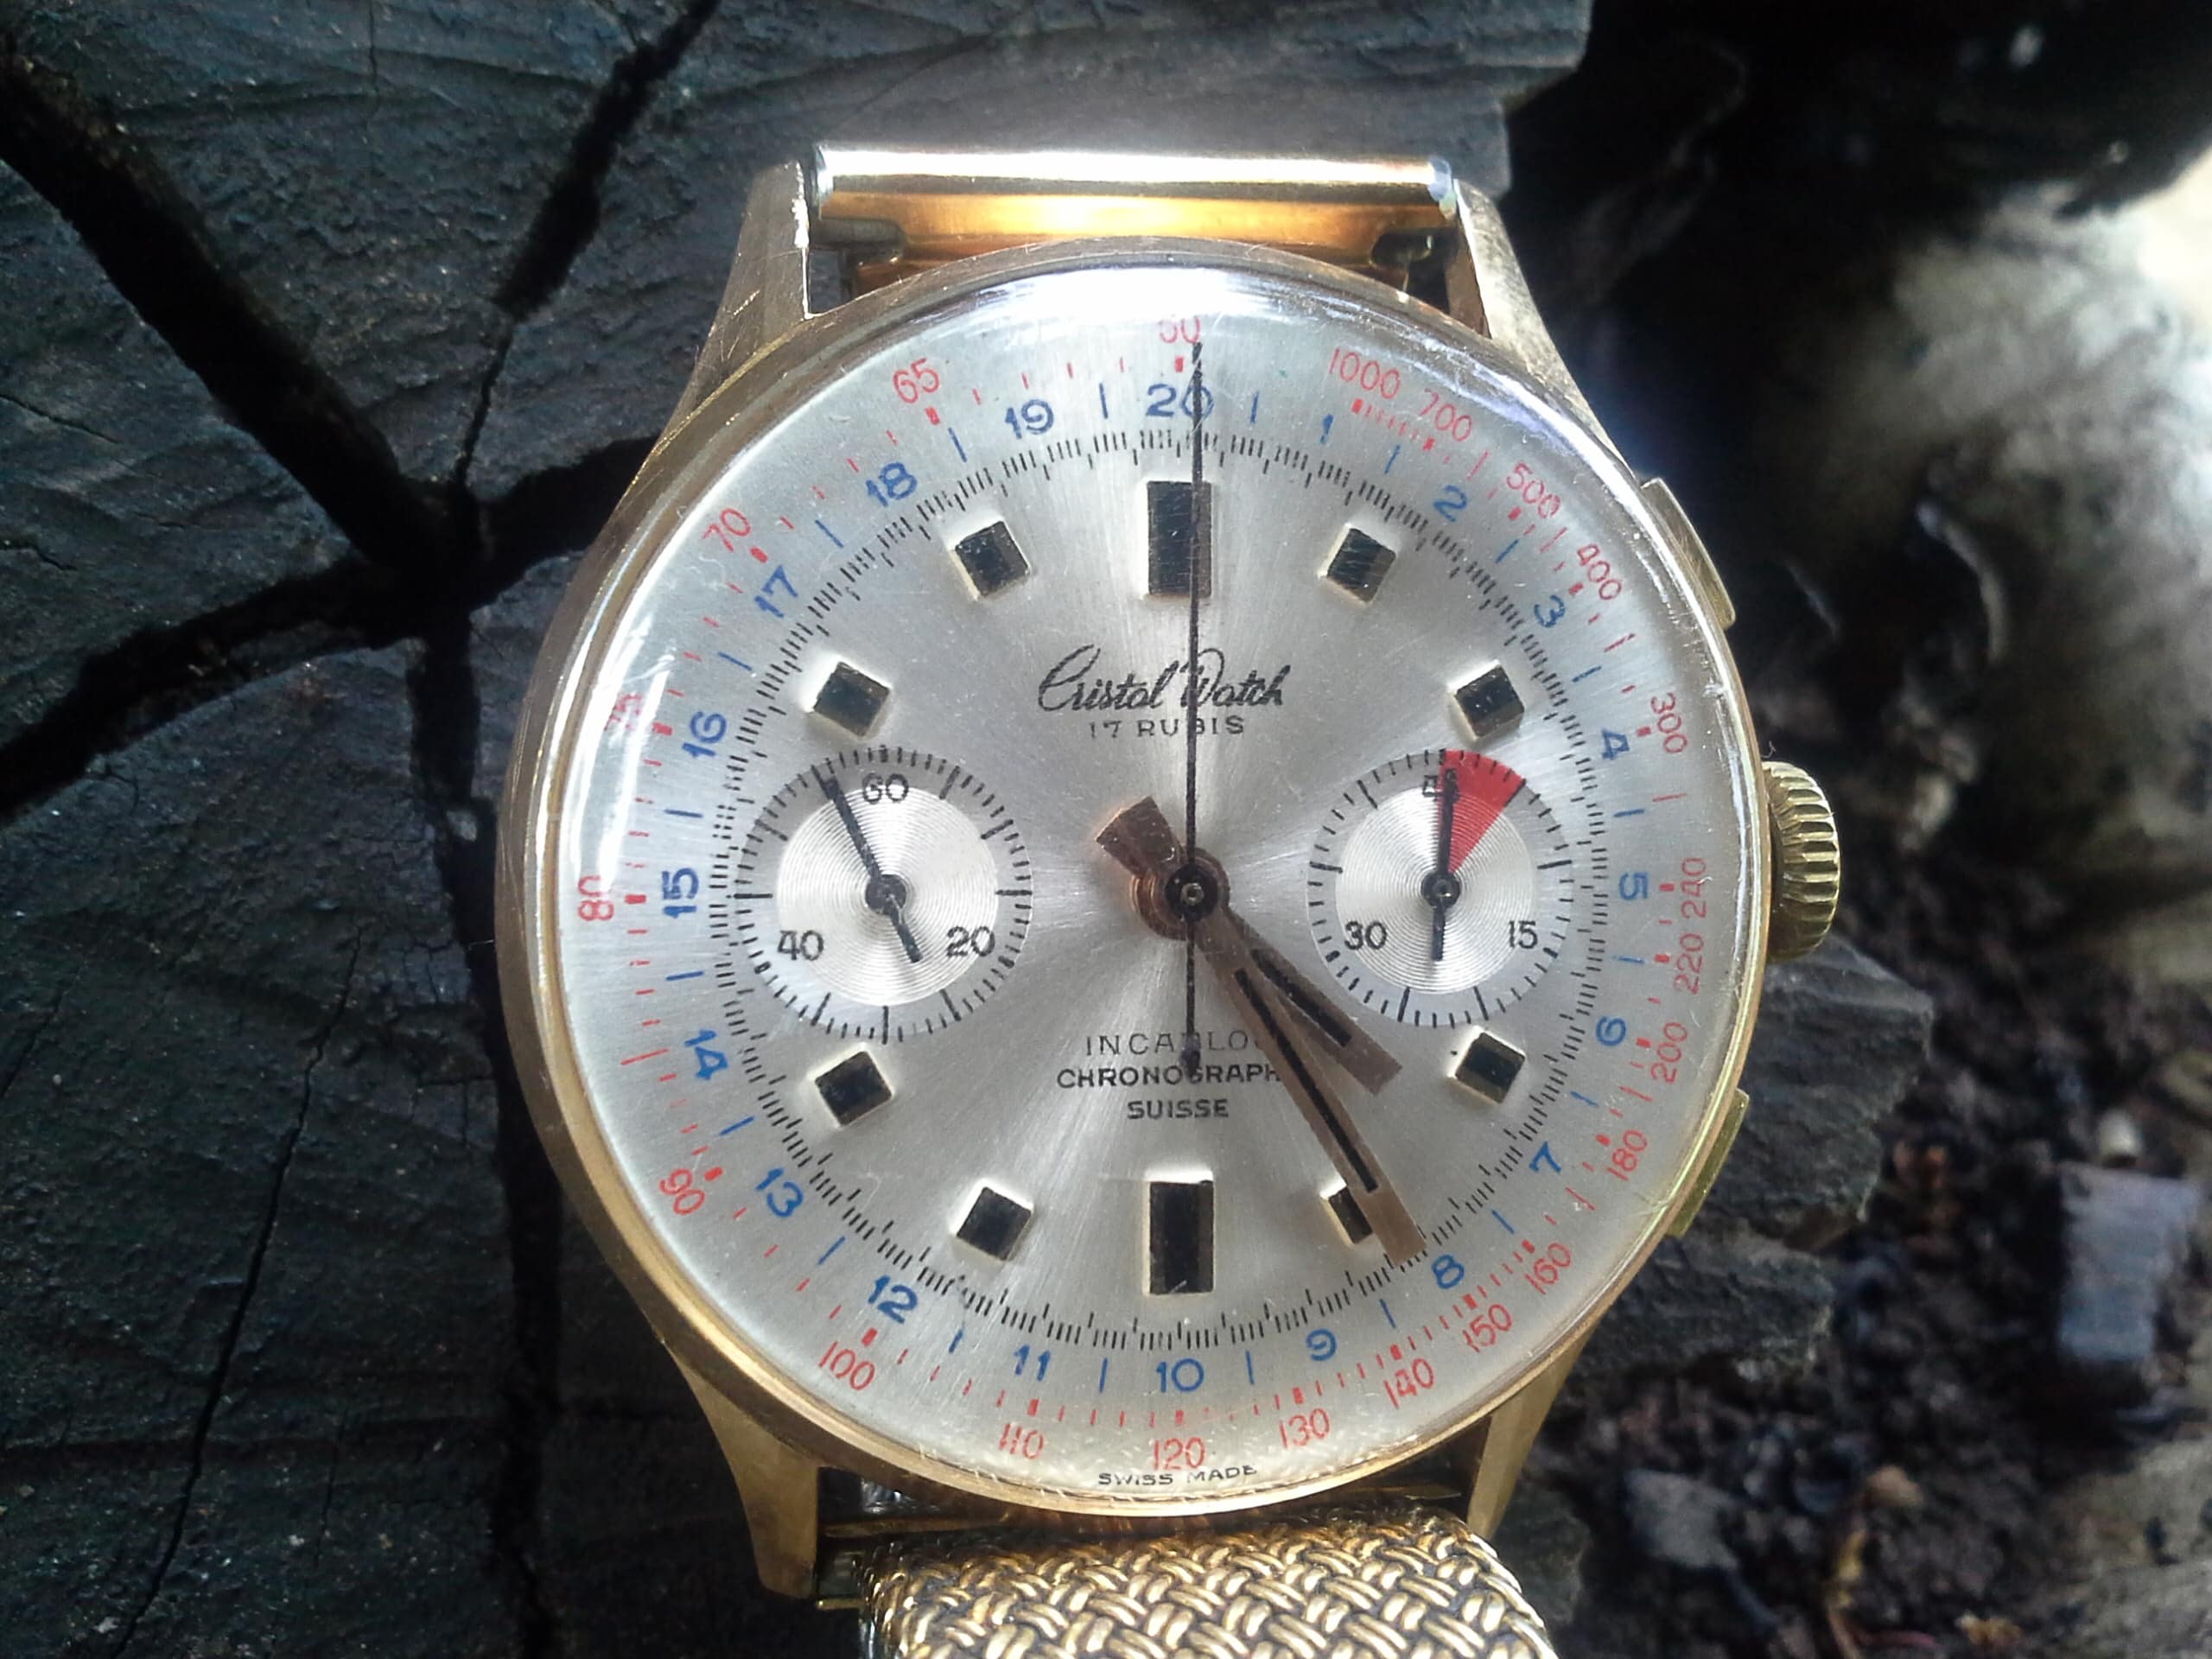 Estimation Montre, horloge: Chrono Suisse Cristal Watch